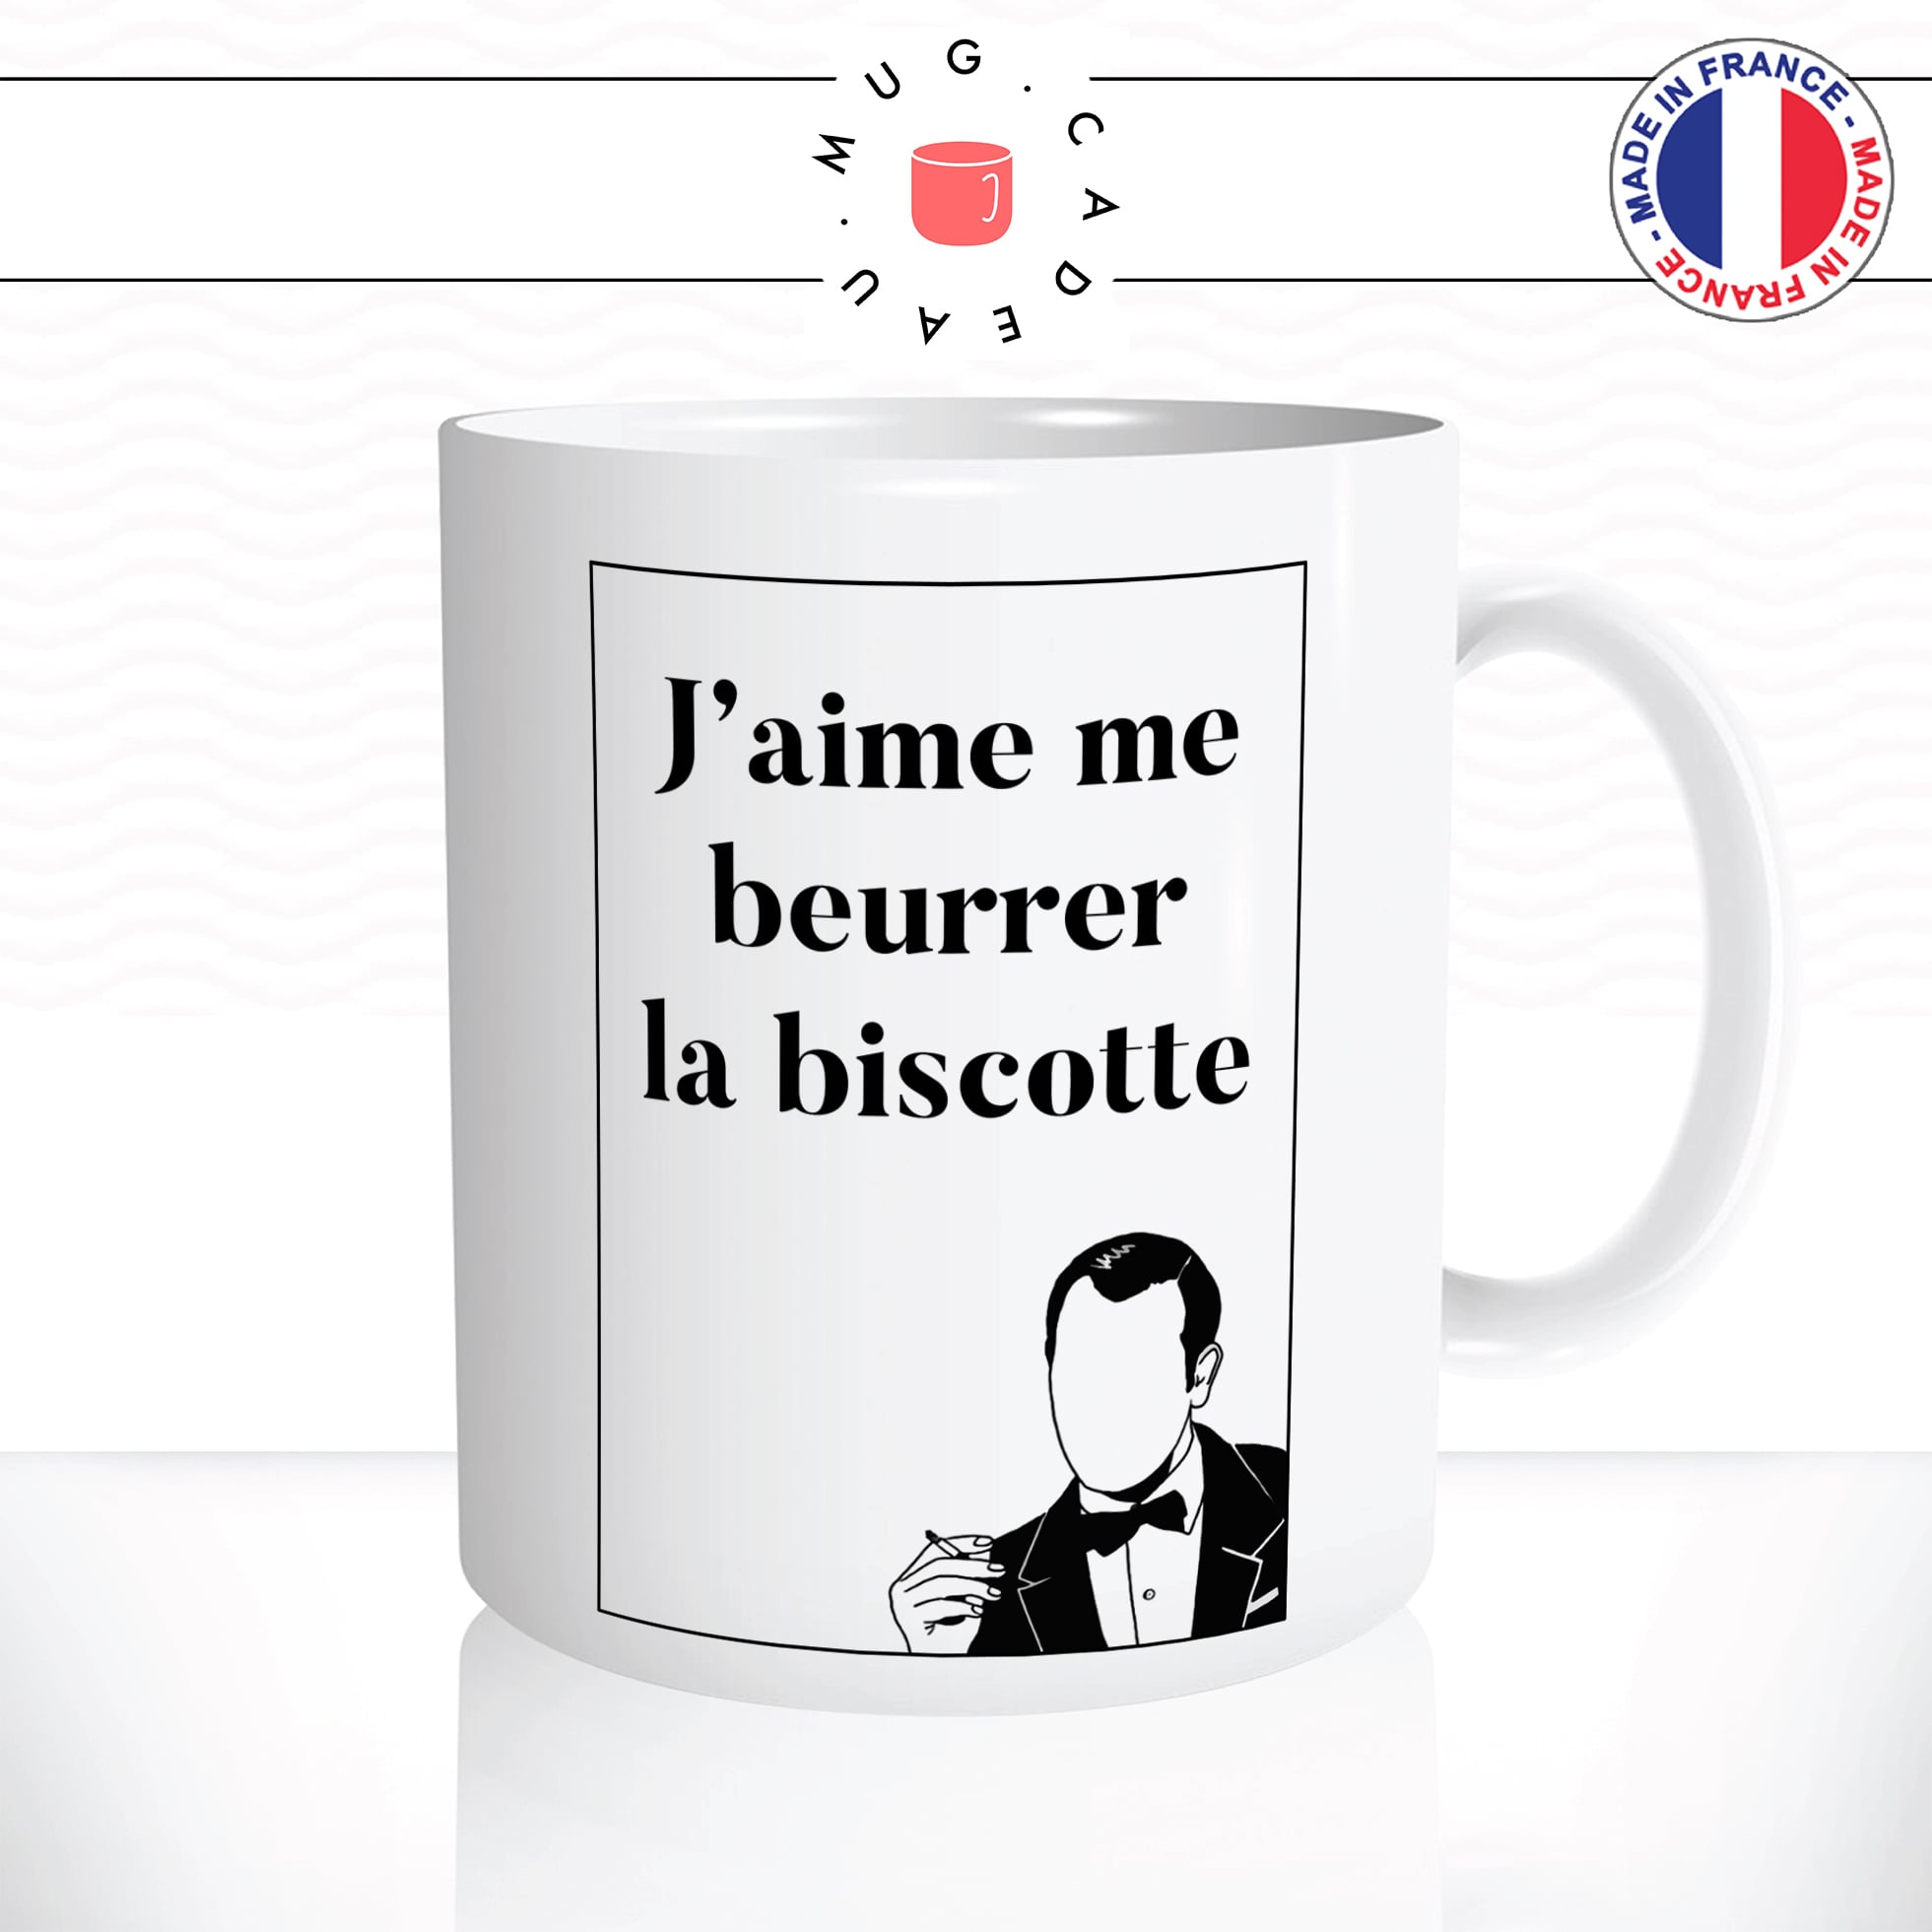 mug-tasse-jaime-me-beurrer-la-biscotte-oss177-hubert-bonnisseur-batte-film-francais-drole-fun-idée-cadeau-original-café-thé-personnalisée2-min